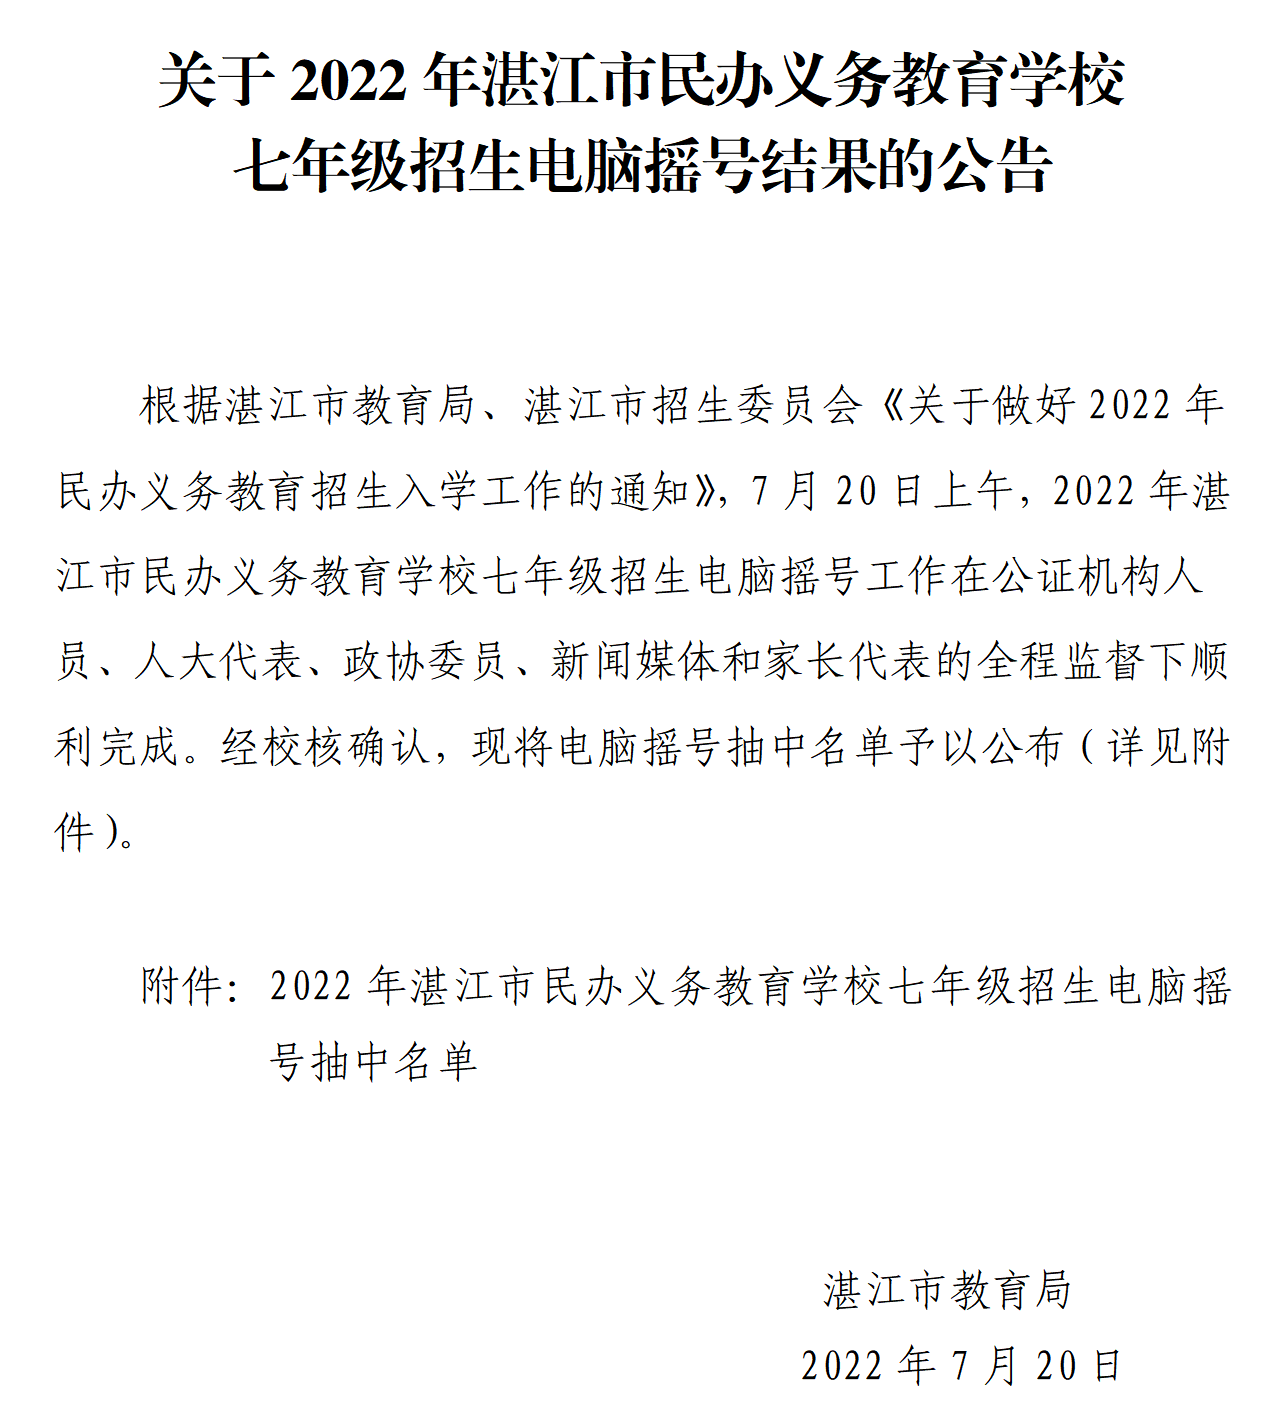 关于2022年湛江市民办义务教育学校七年级招生电脑摇号结果的公告_01.png